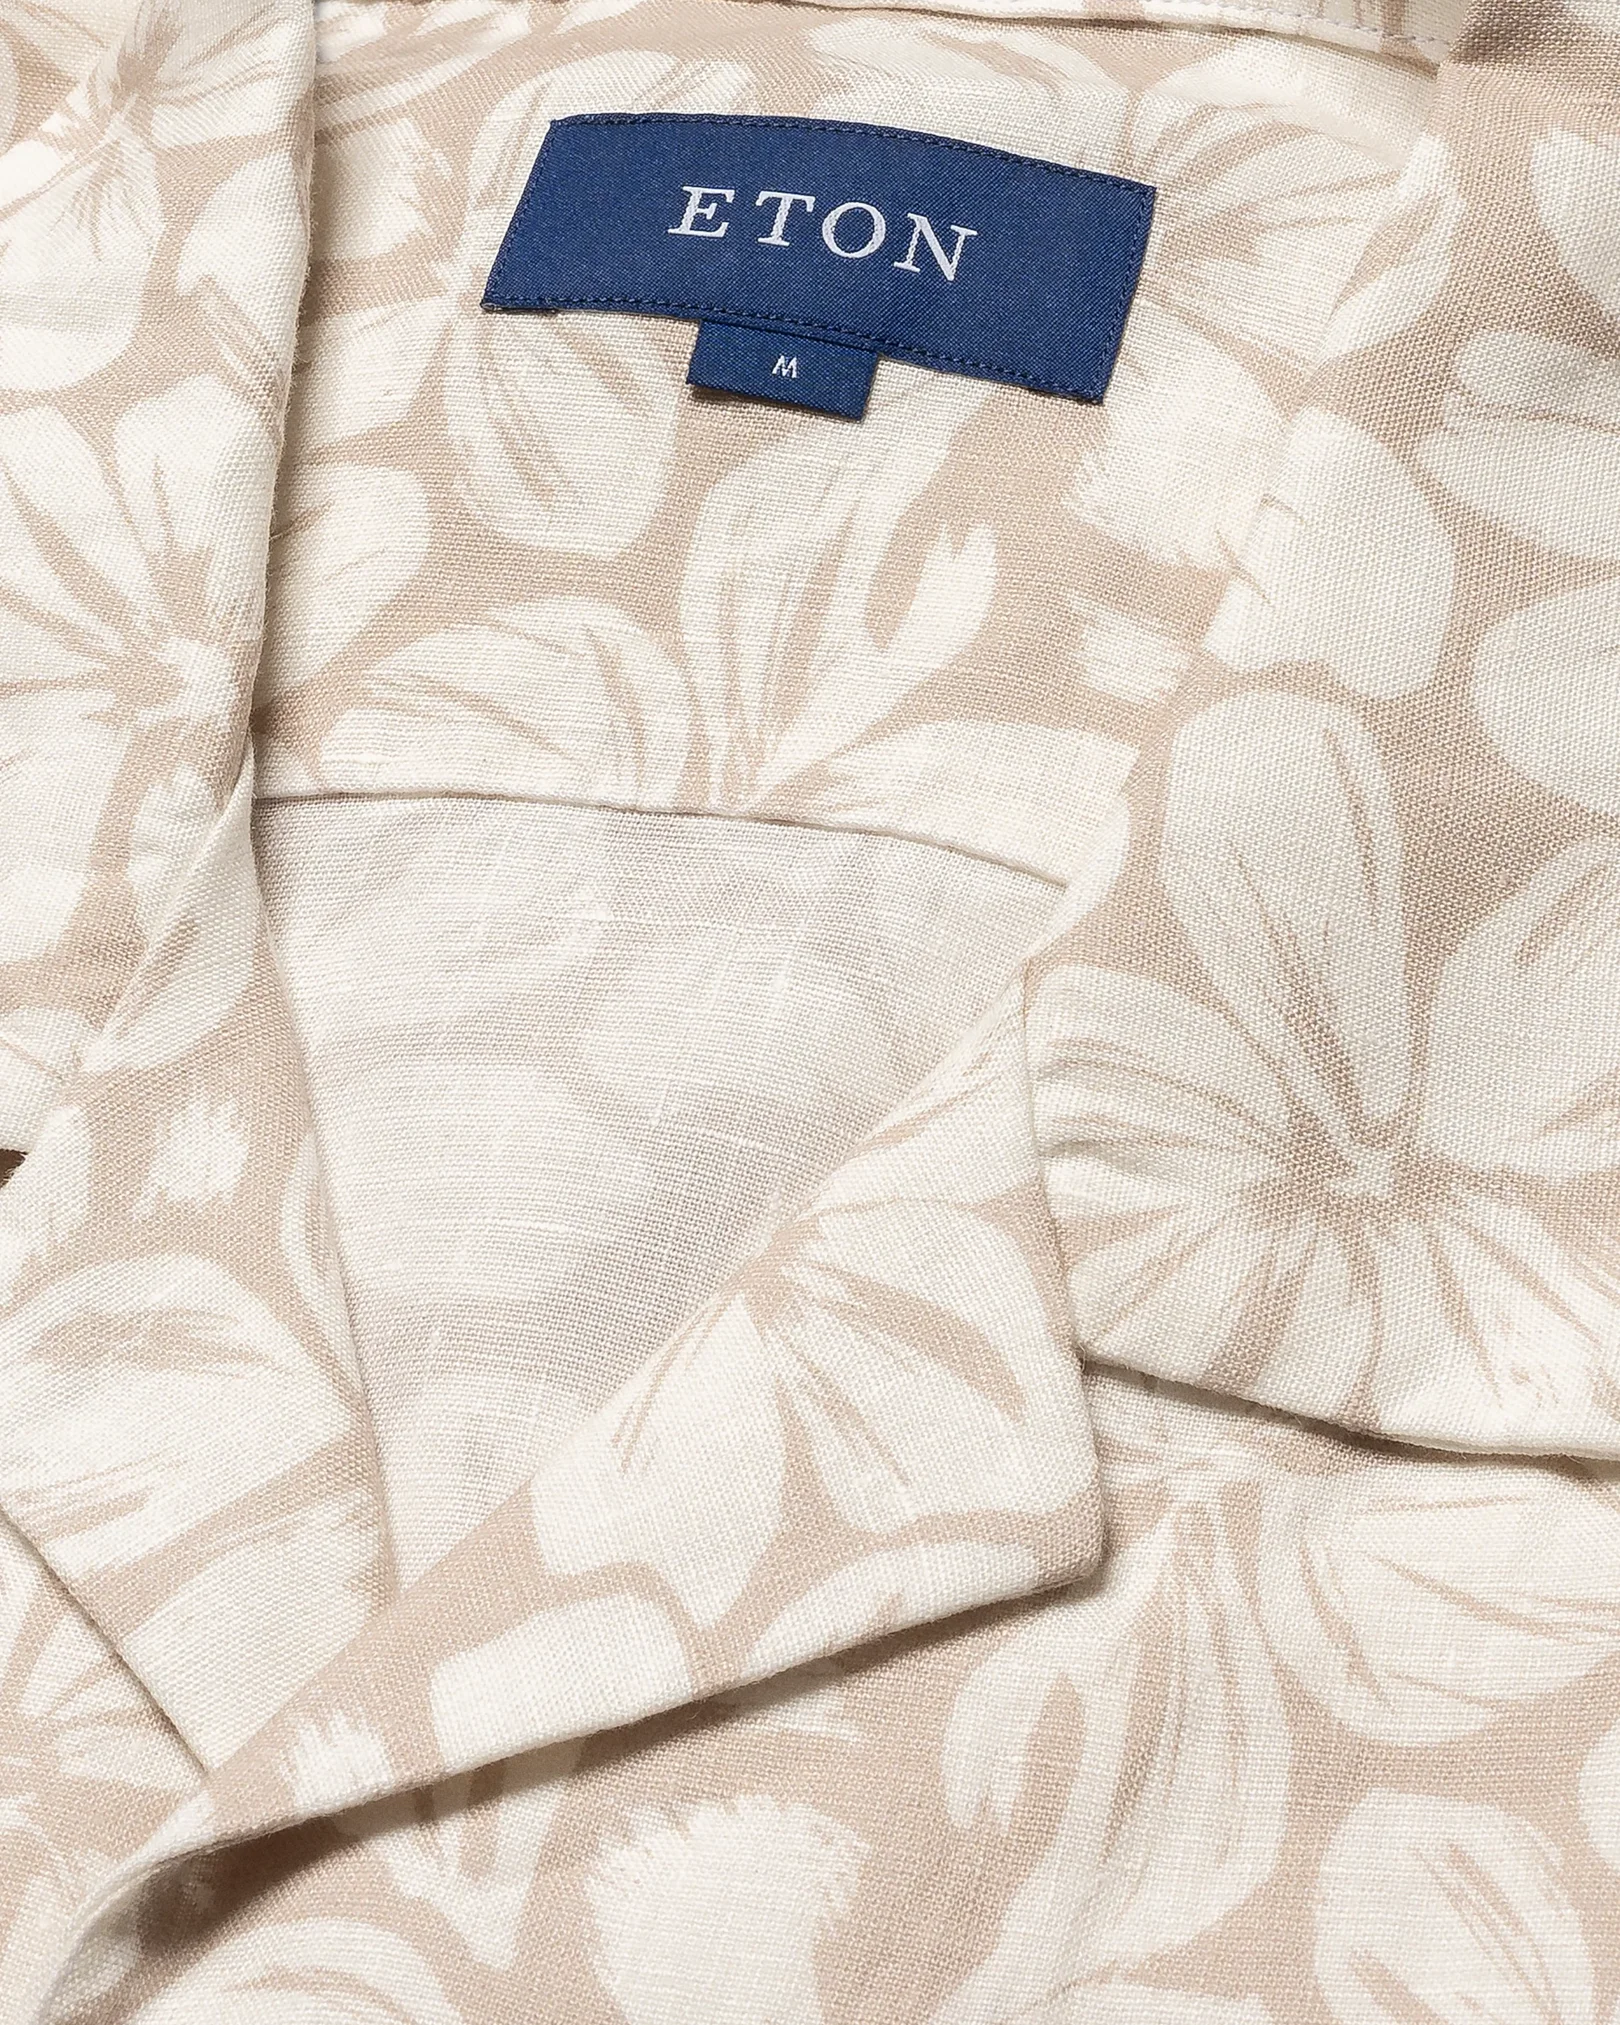 Eton - brown resort linen shirt